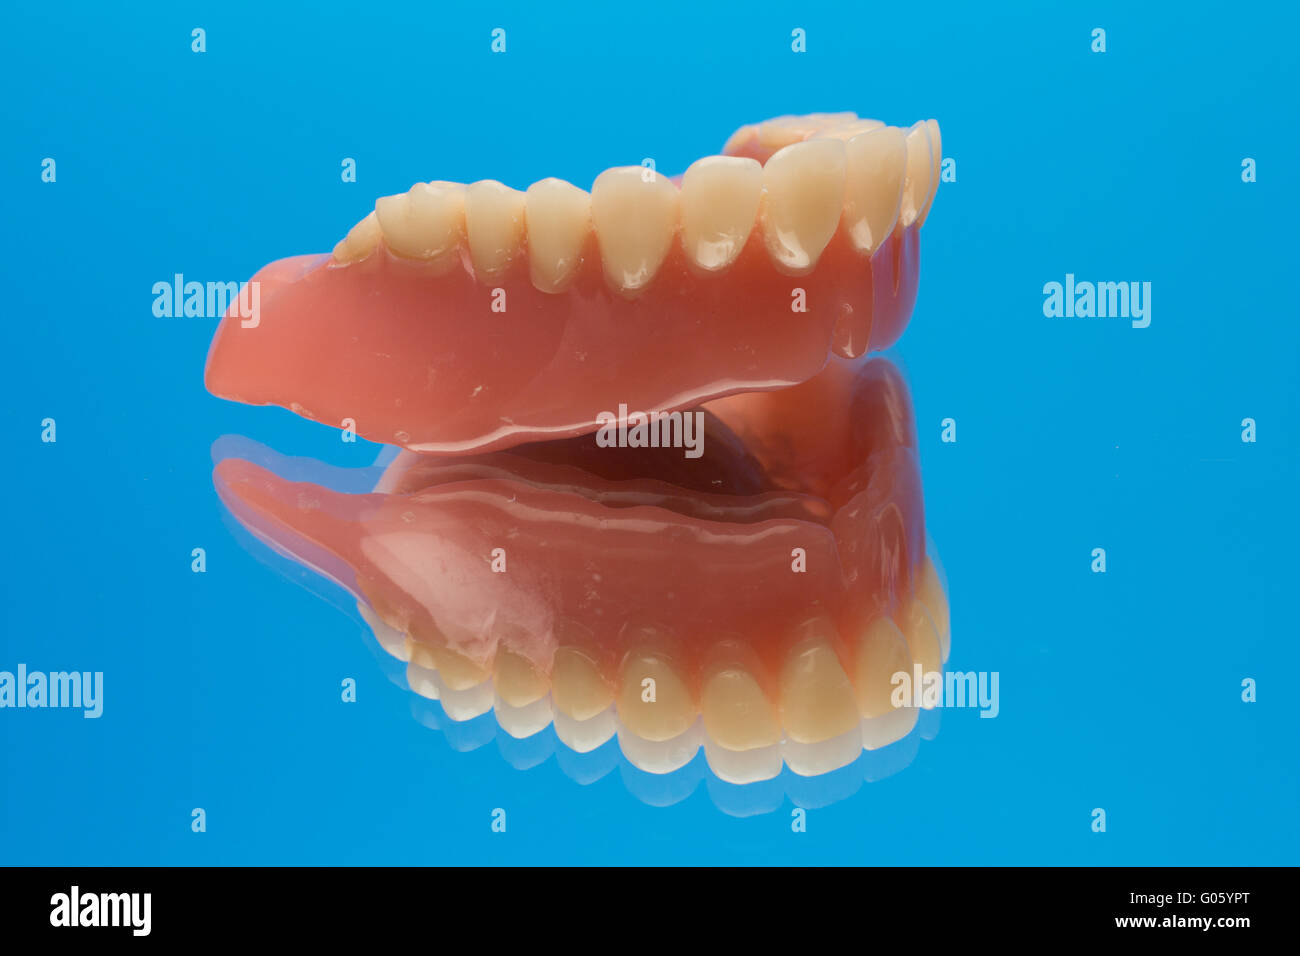 Denture prosthesis on mirror Stock Photo